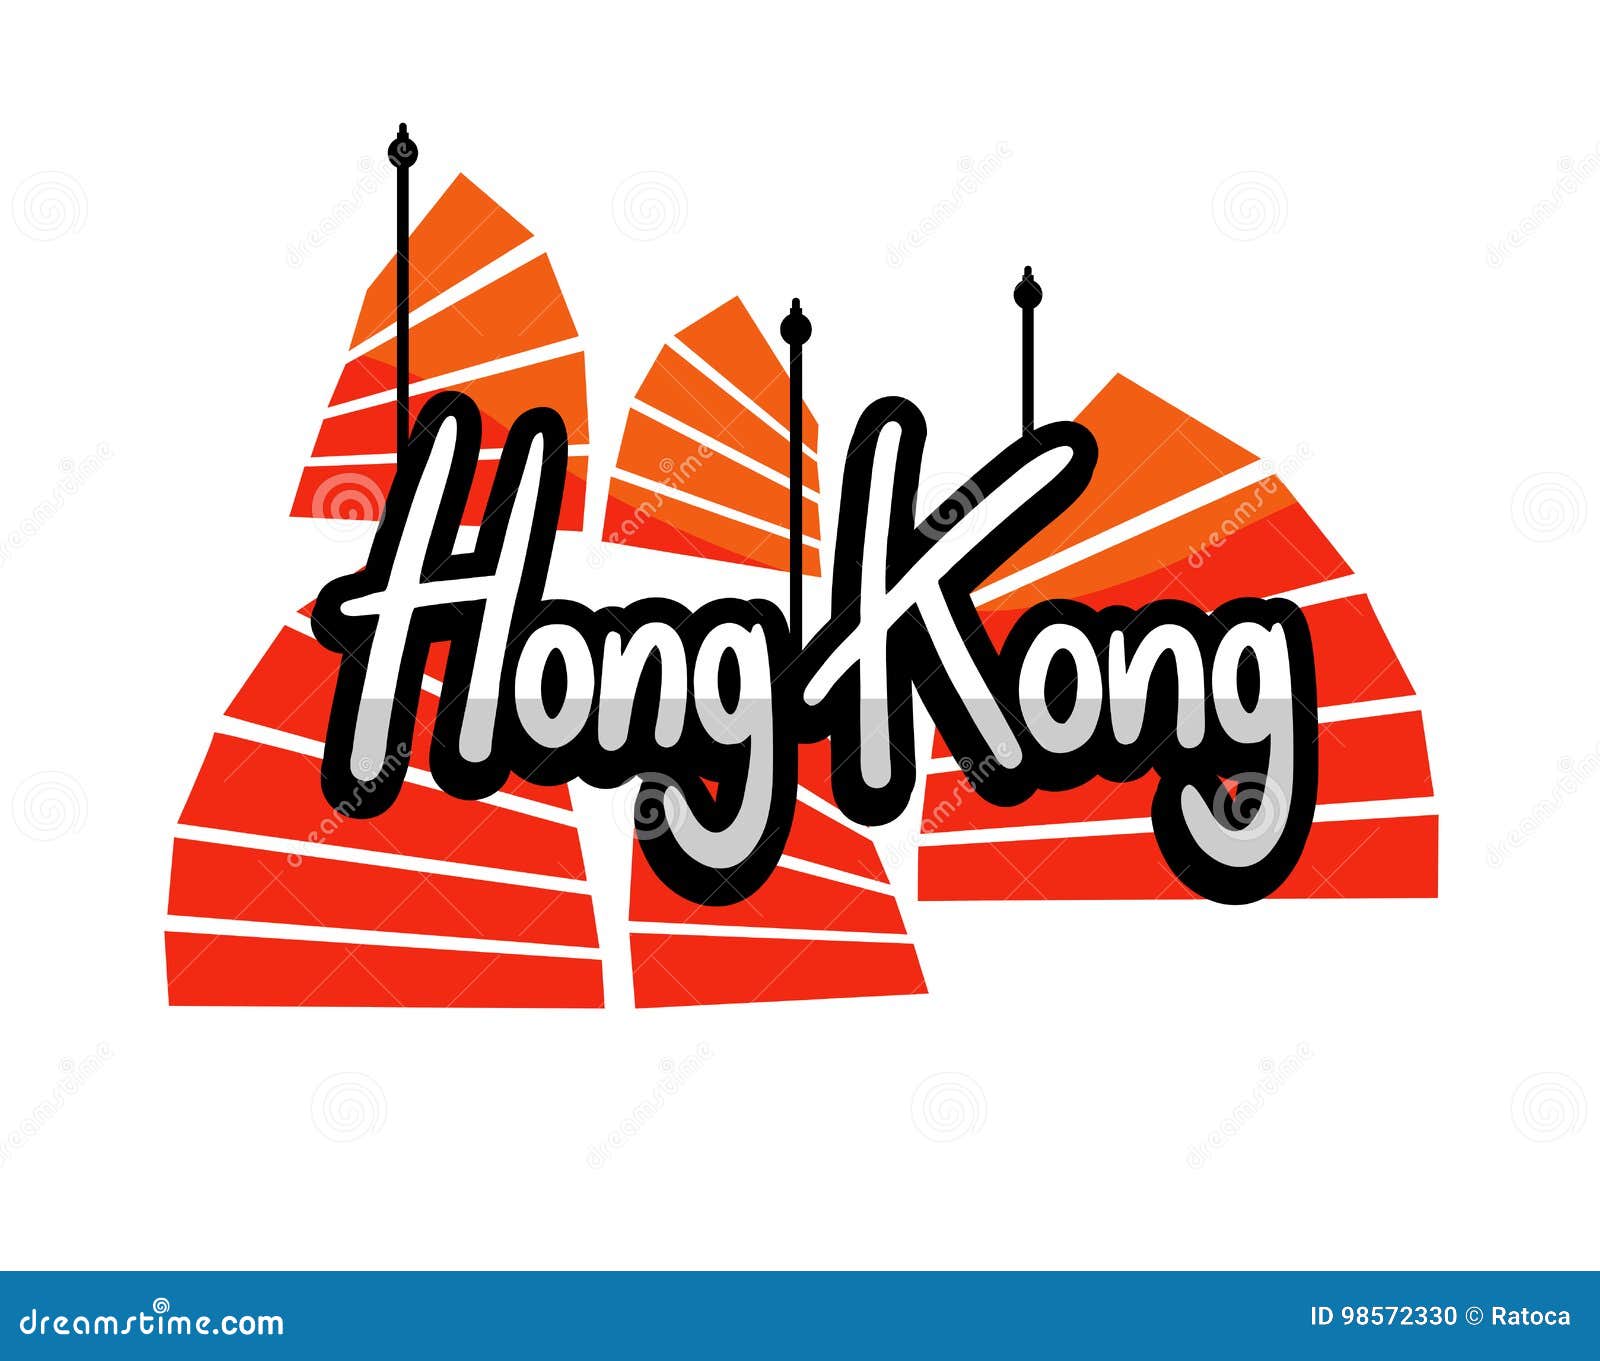 香港标志 向量例证. 插画 包括有 香港, 国家, 查出, 汉语, 例证, 中国, 小船, 图象, 状态 - 100823249